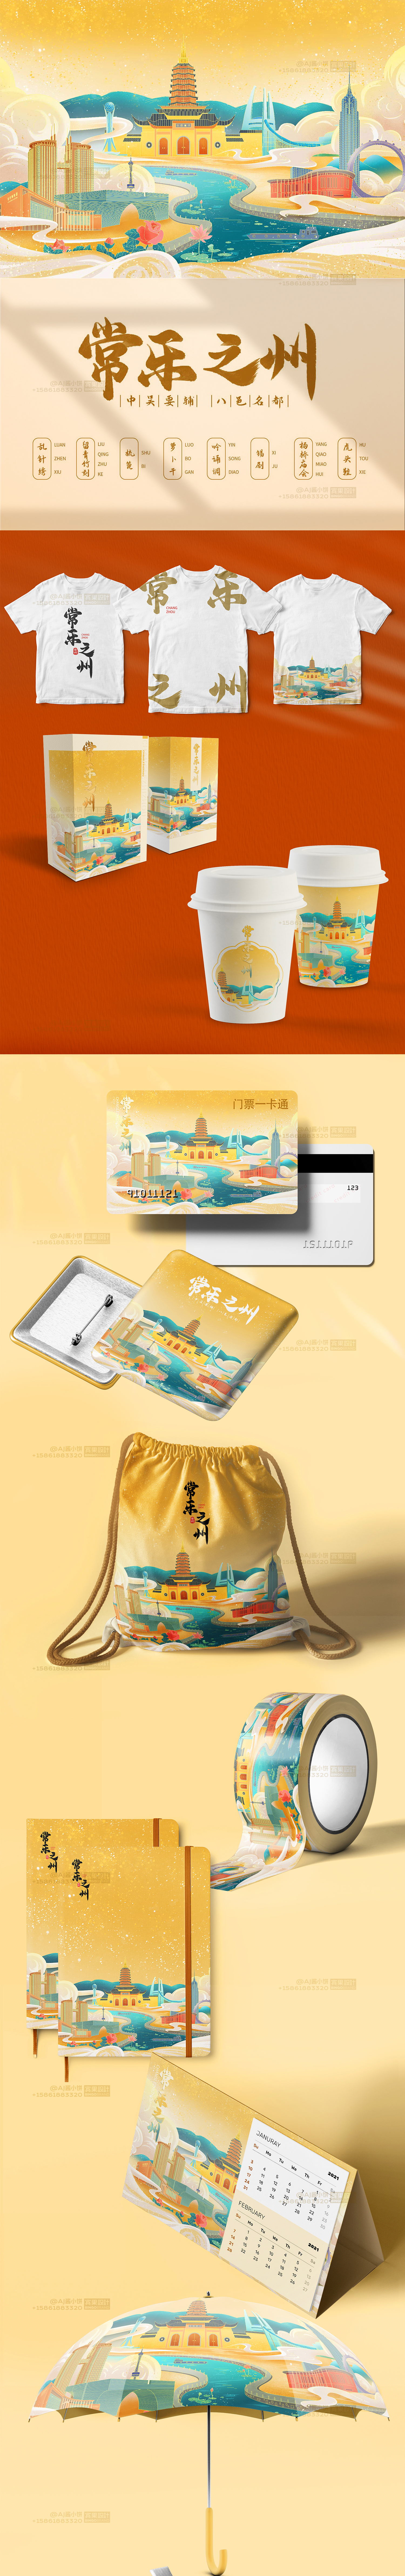 常州城市形象中国风插画 旅游文创 周边产品包装设计设计图片